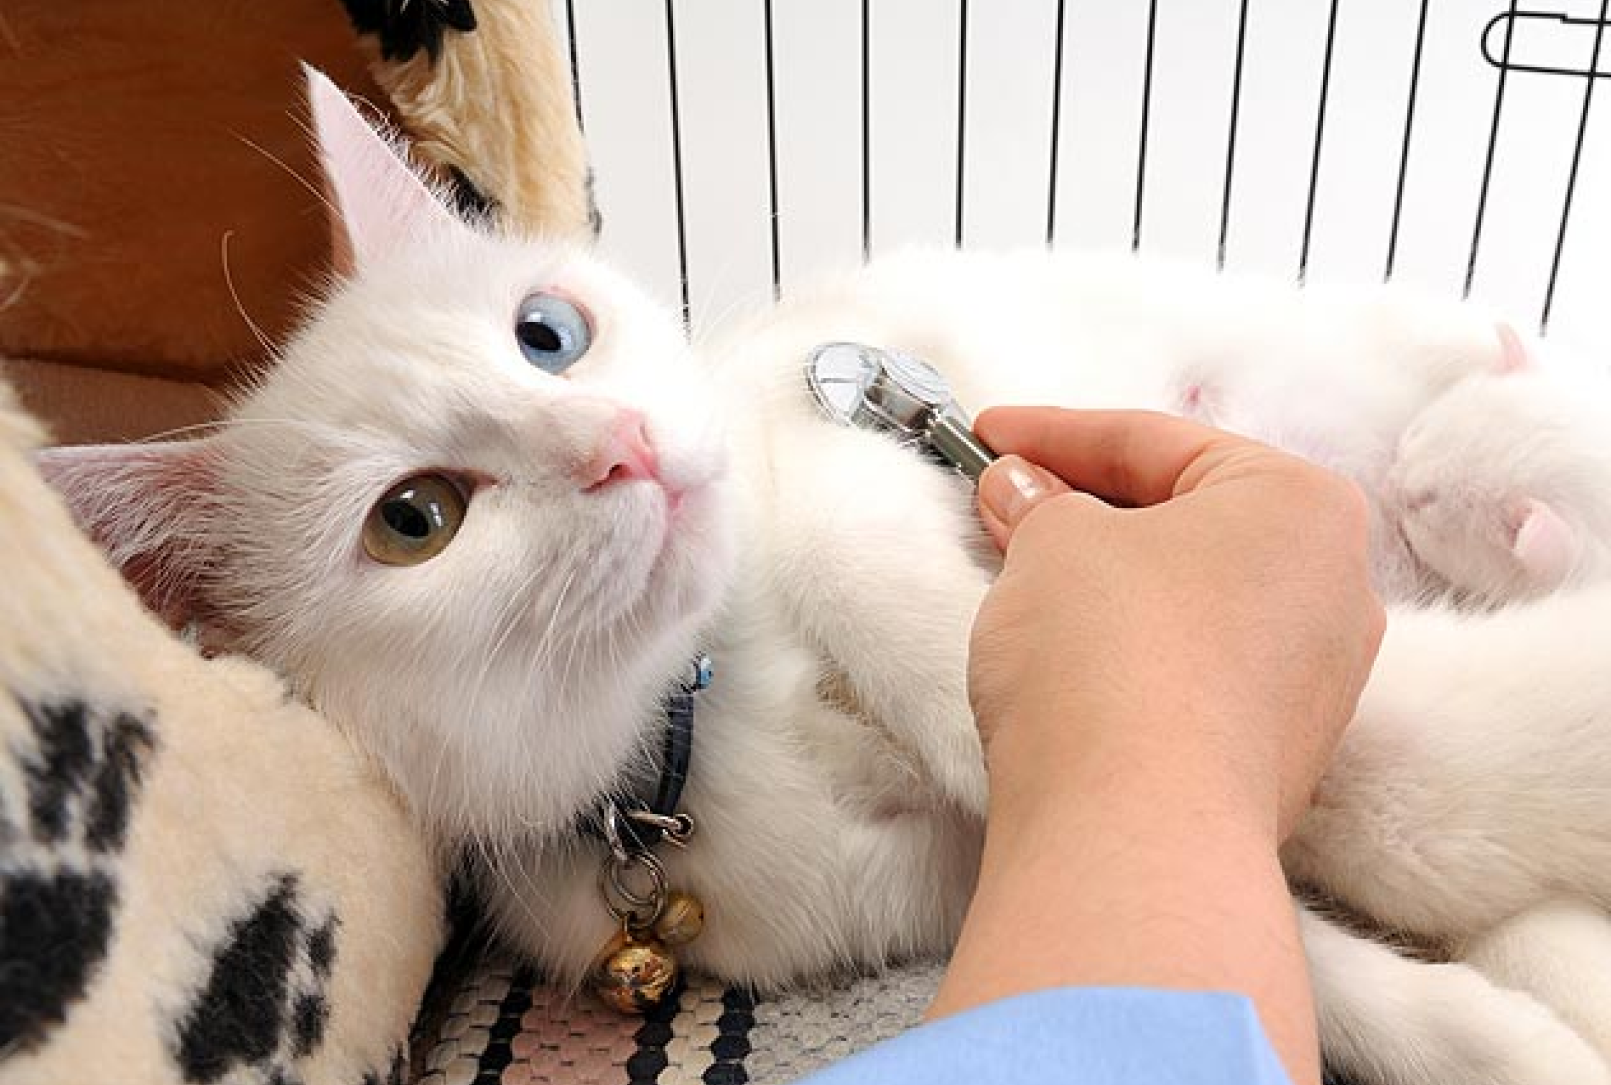 A cat recieving medical treatment